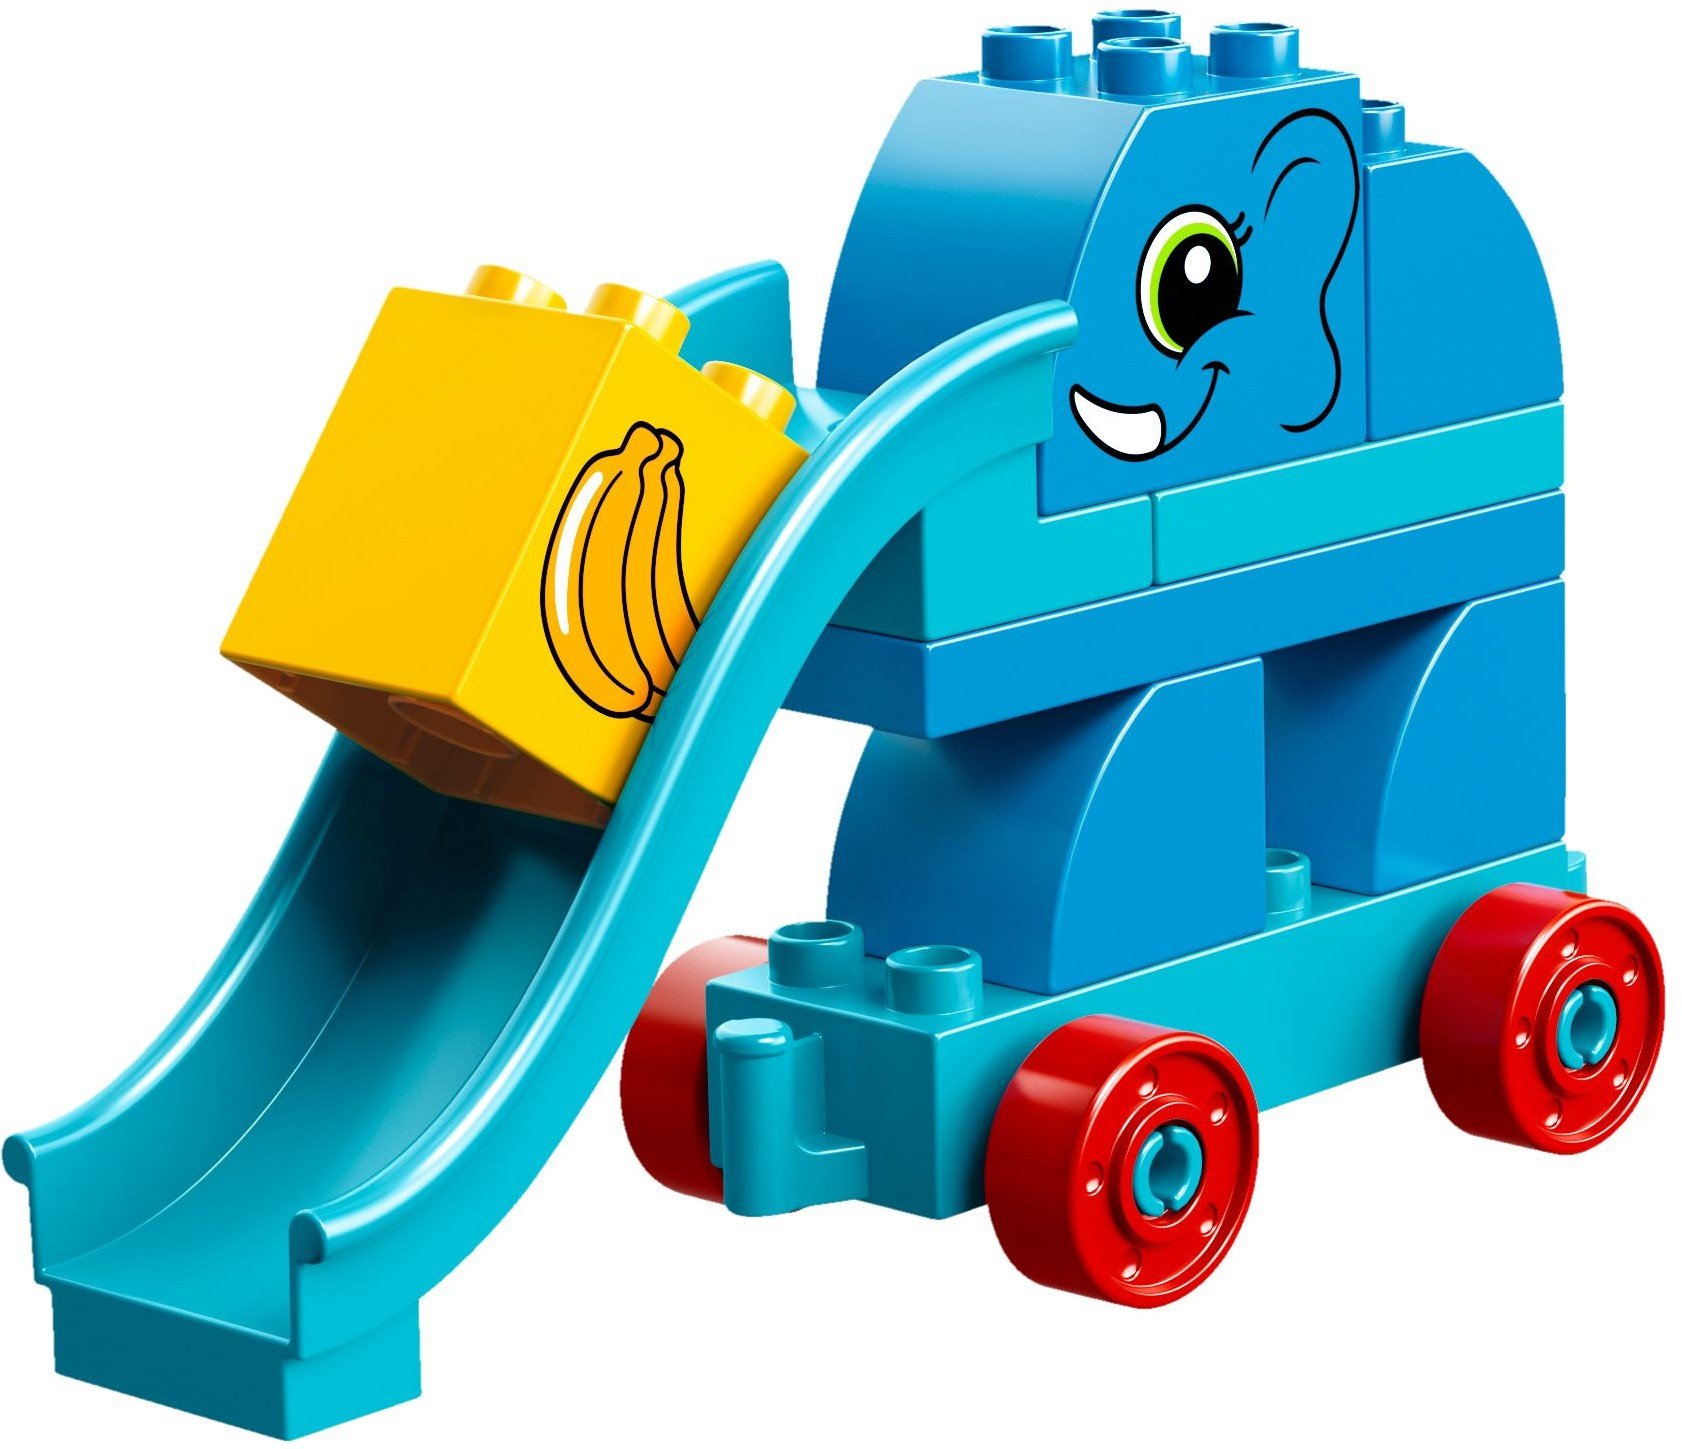 LEGO 10863 DUPLO Meine erste Steinebox mit Ziehtieren, Spielzeuge für Vorschulkinder im Alter von 1,5-3 Jahren